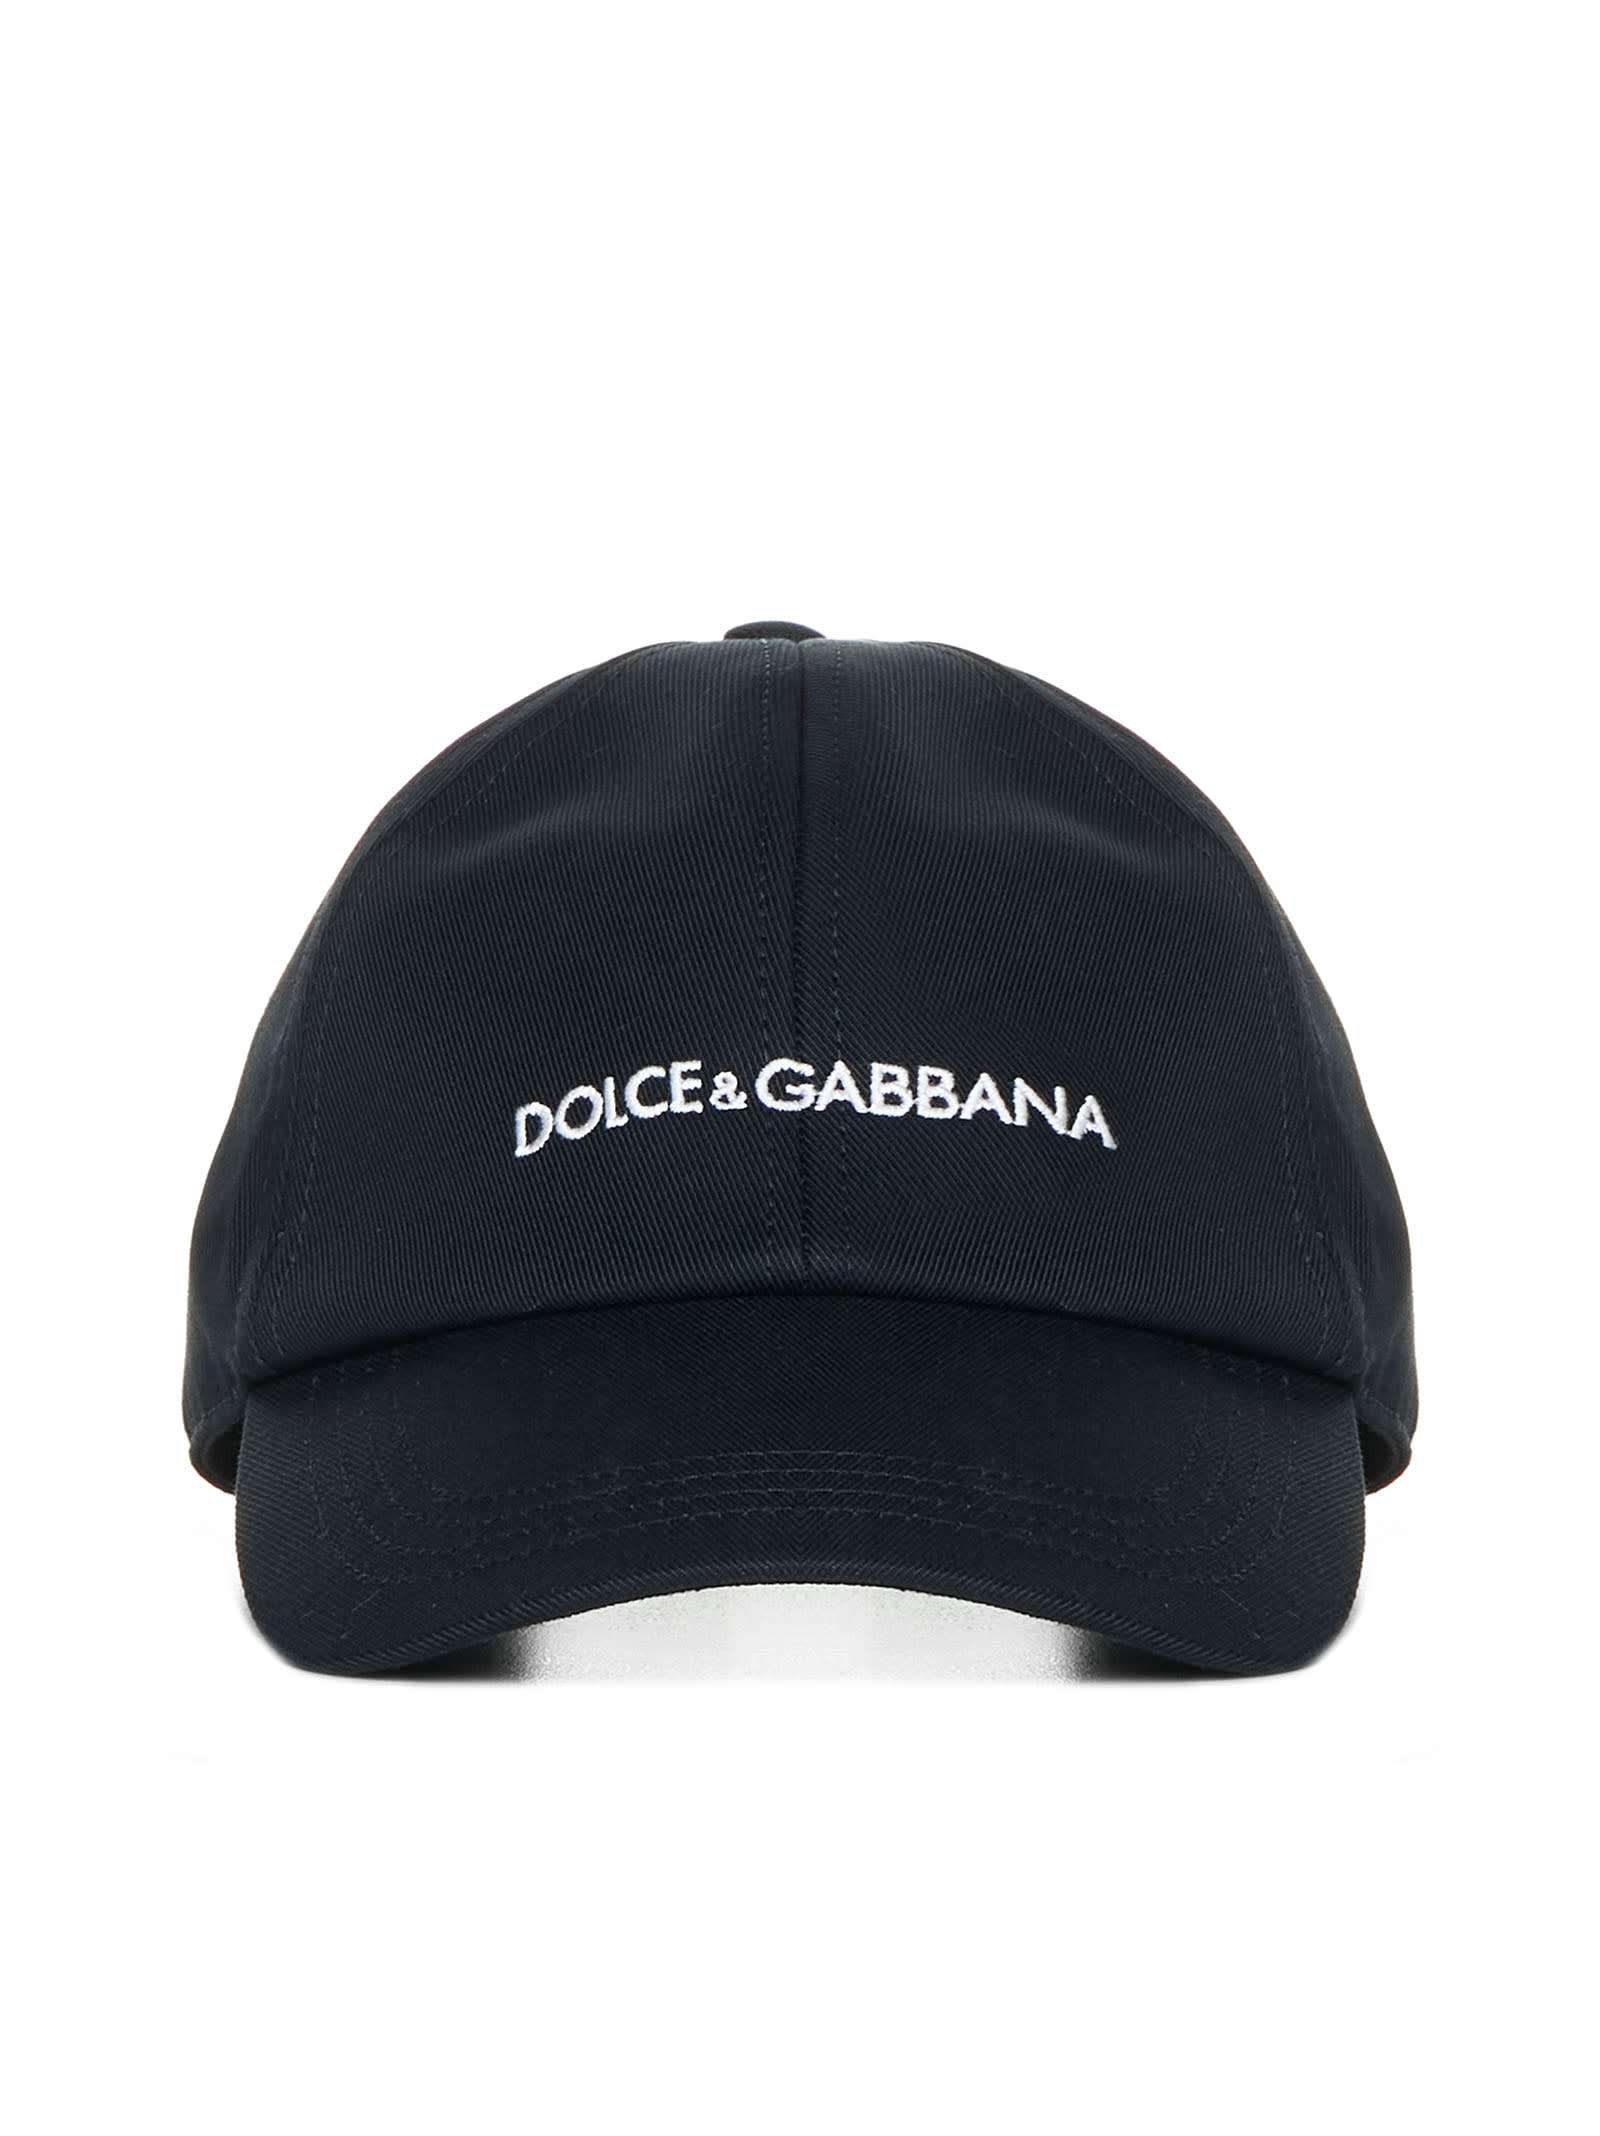 DOLCE & GABBANA LOGO BLUE HAT